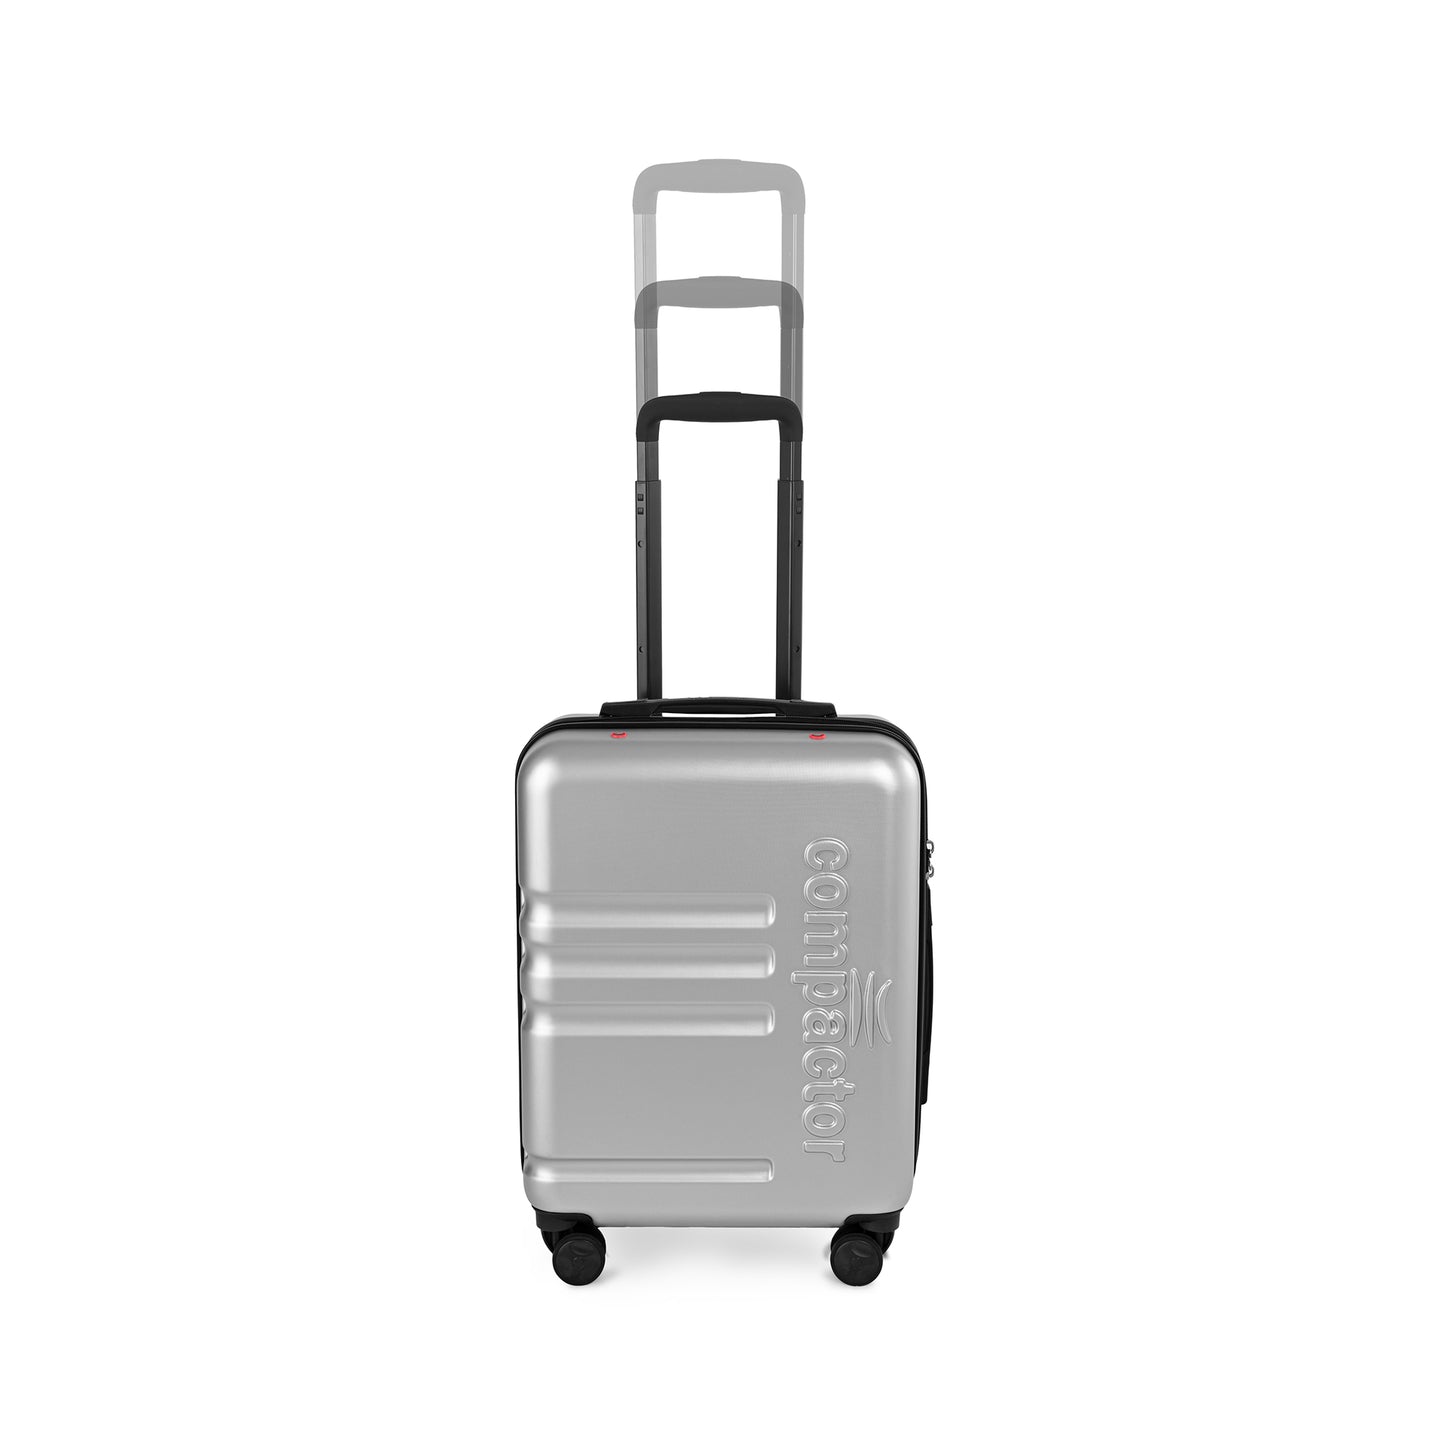 Acheter Sac de rangement de voyage, 4/7 pièces, Compression, gain de place,  espace de valise maximum efficace, accès rapide, organisateurs de voyage